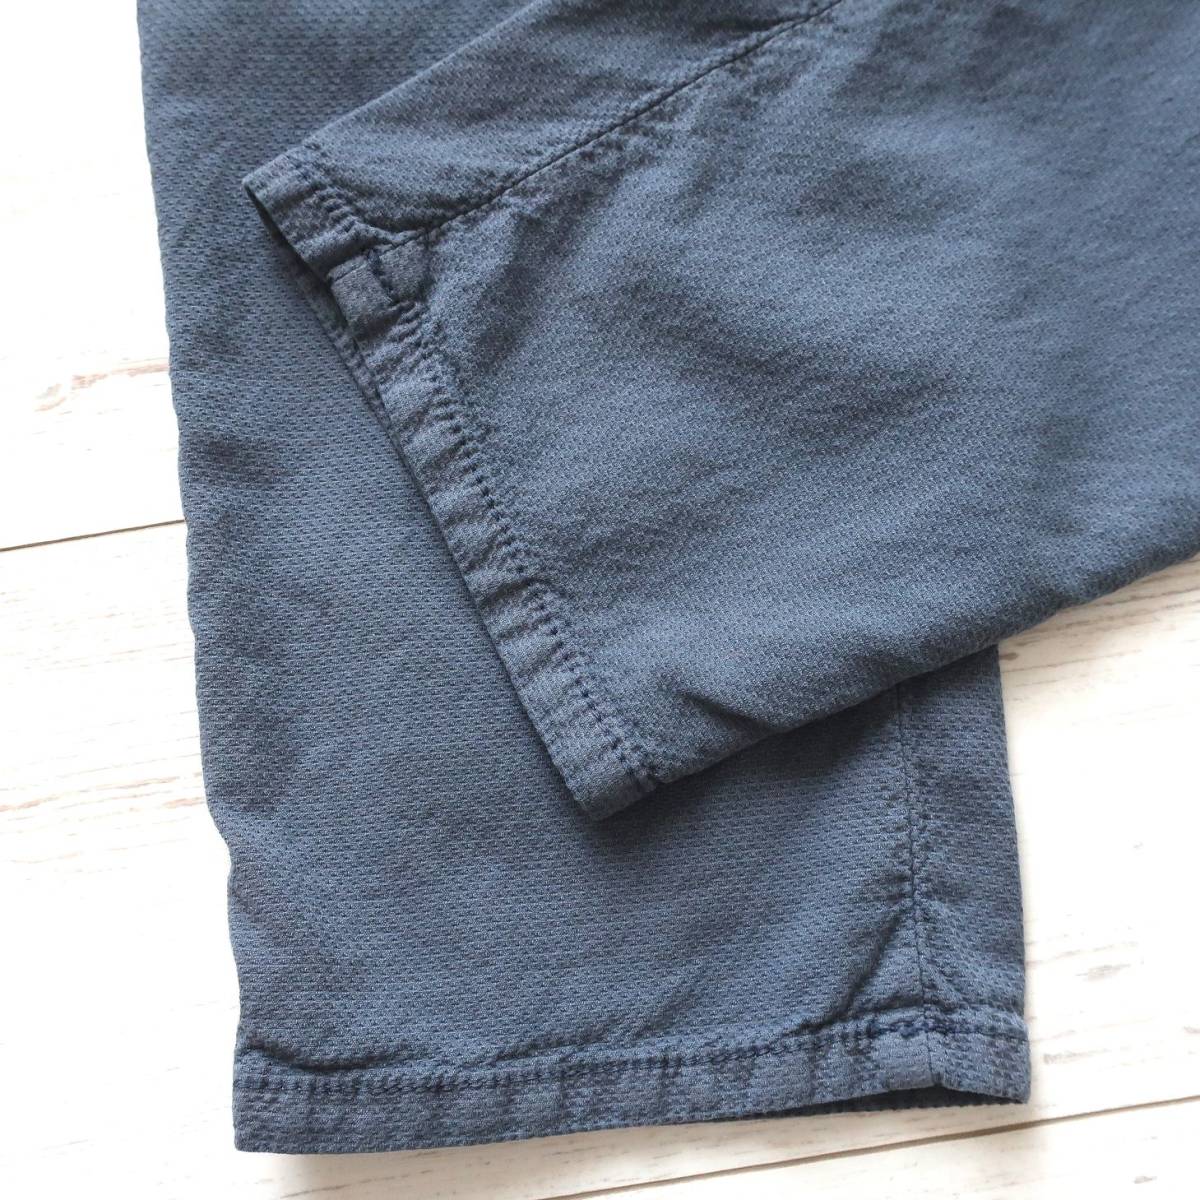  новый товар не использовался INCOTEX INCOTEX тонкий обтягивающий брюки из твила стрейч тонкий тугой текстильный узор брюки синий голубой серый мужской W36 2XL 3L